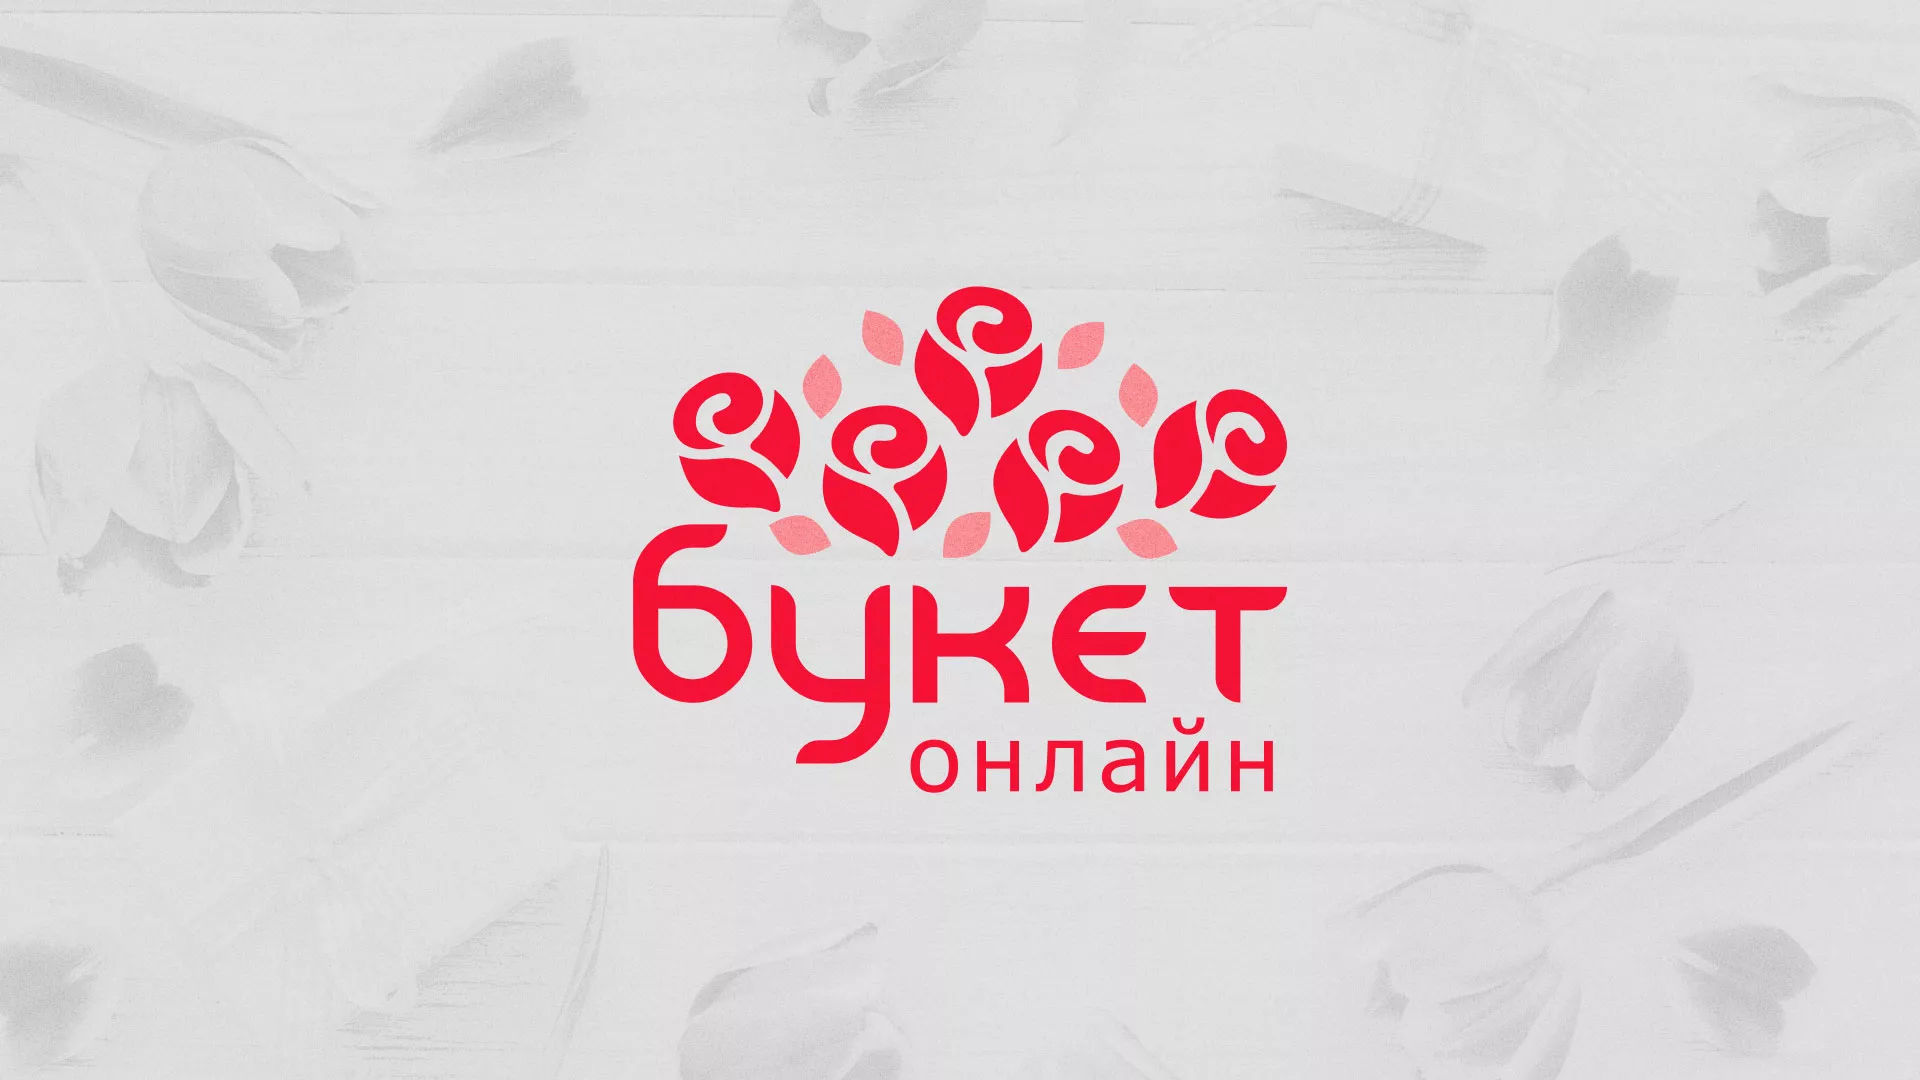 Создание интернет-магазина «Букет-онлайн» по цветам в Покровске